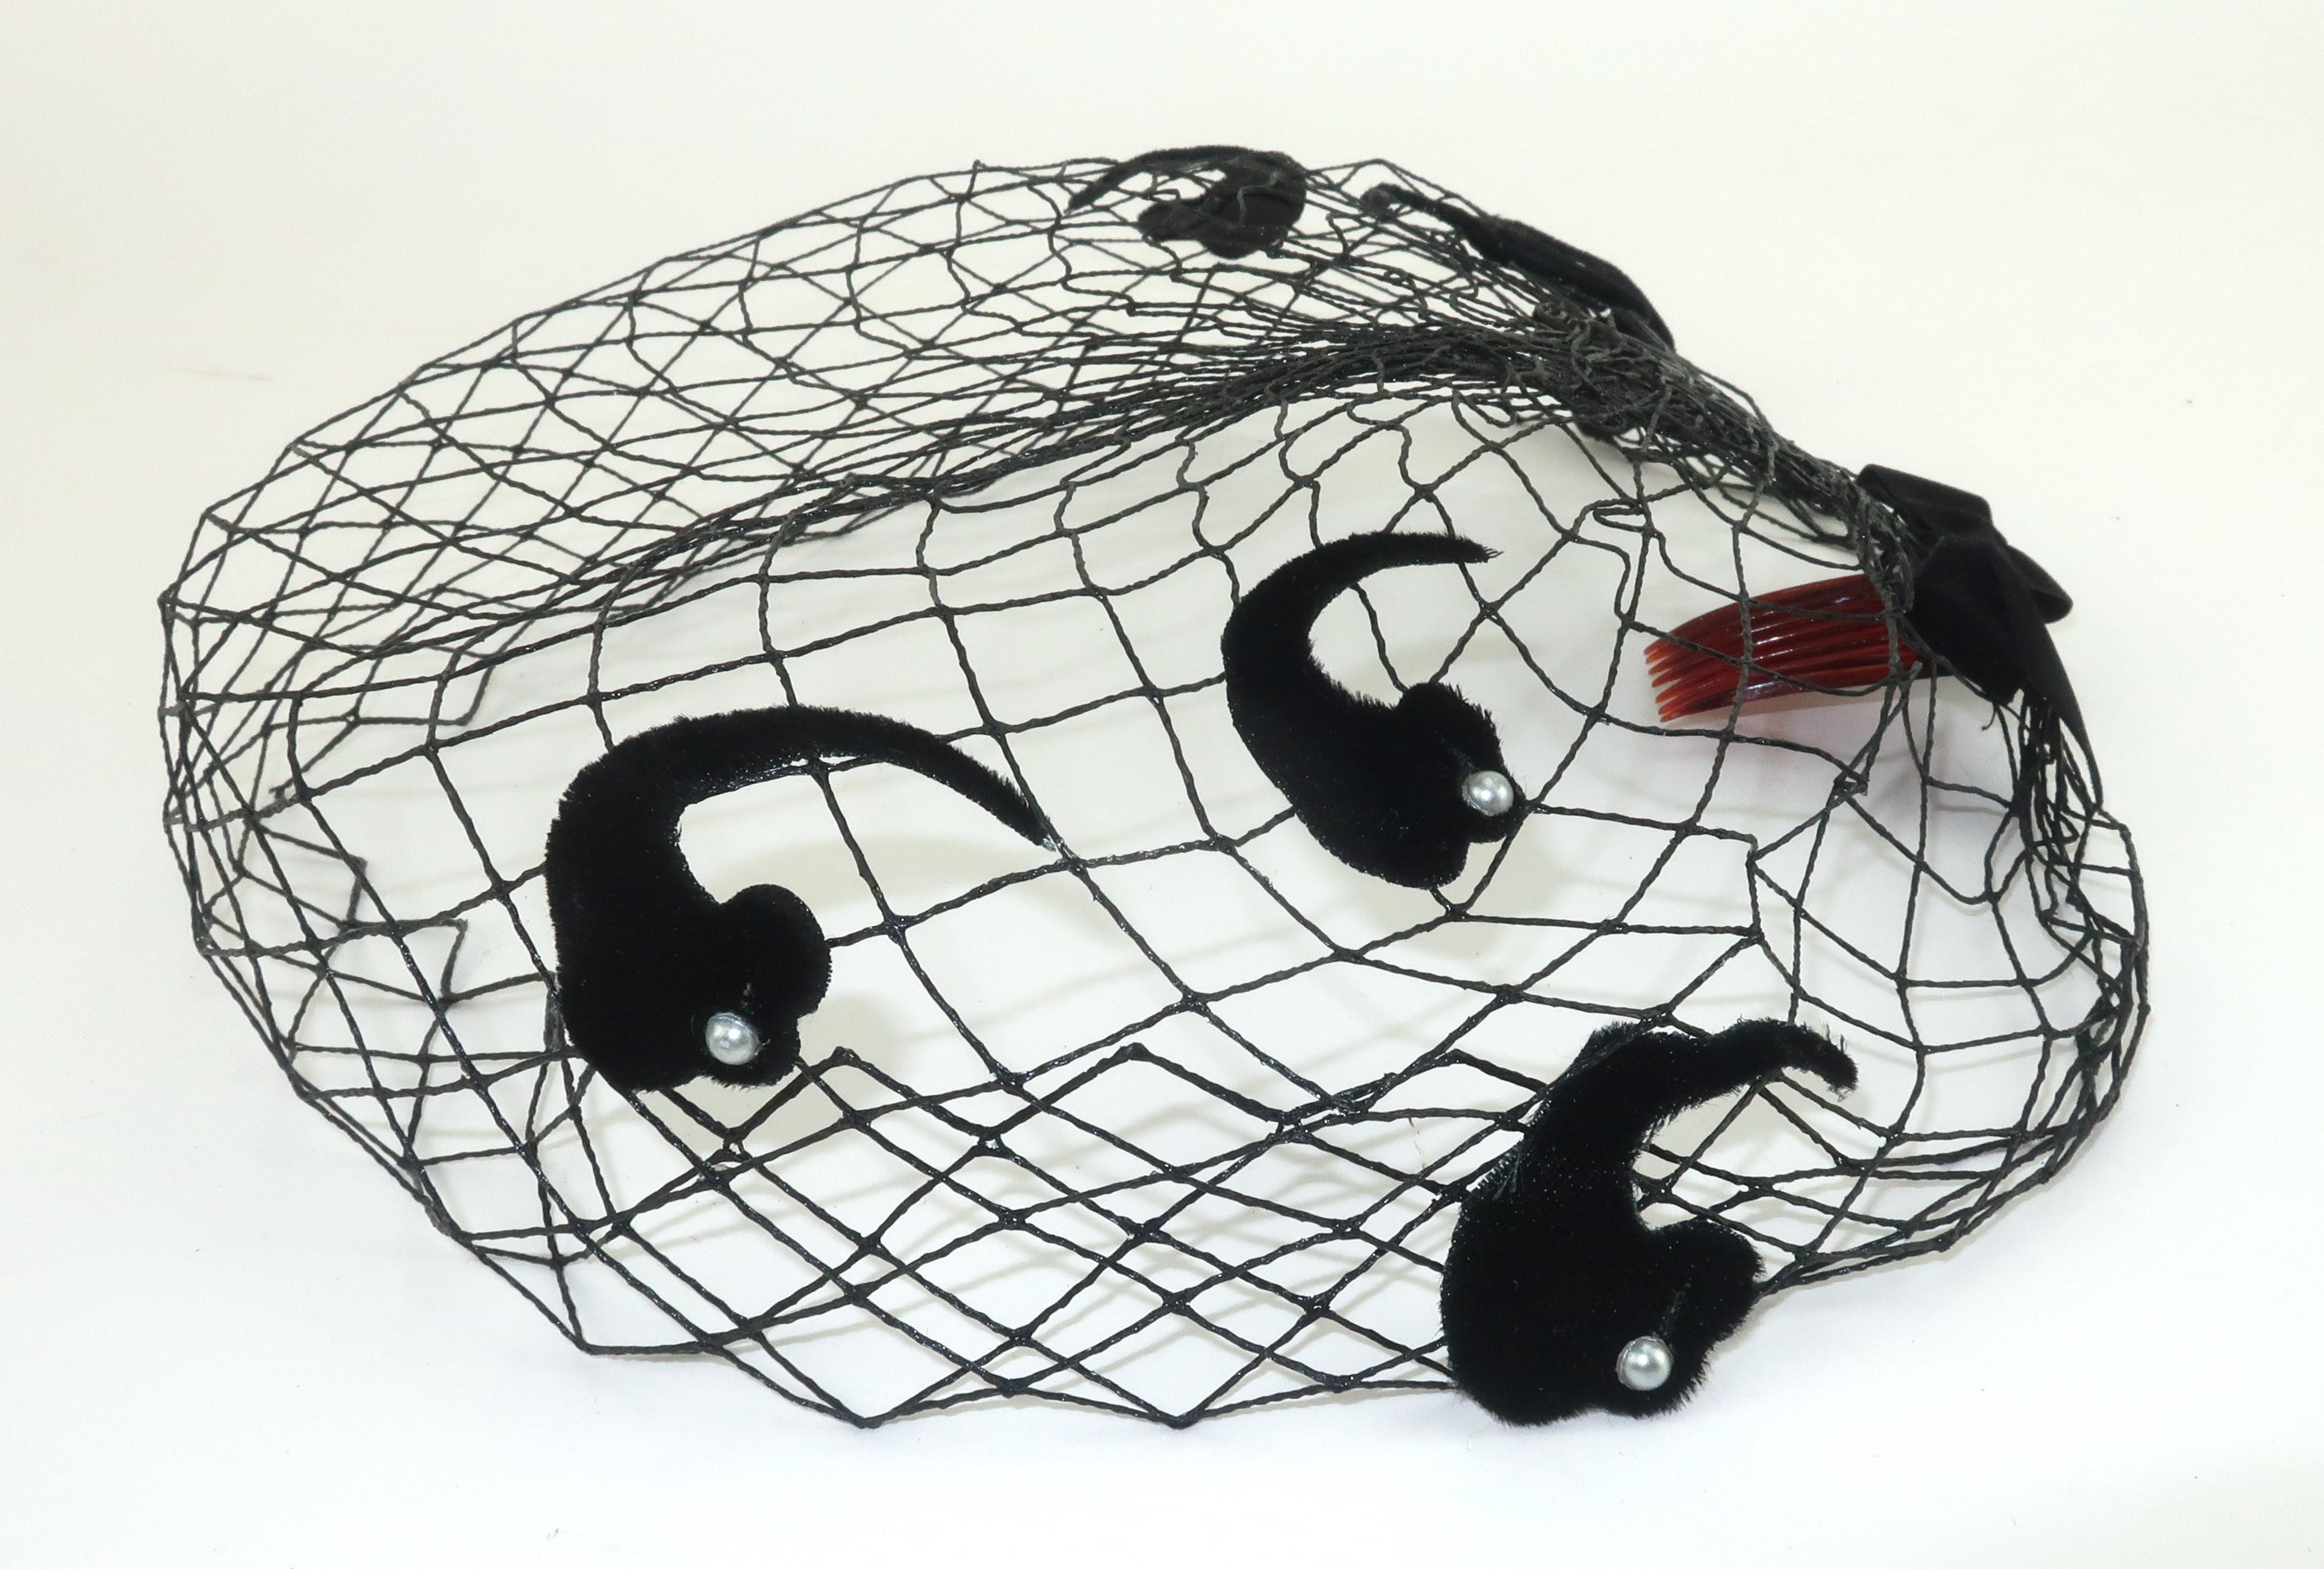 Schwarzer Netzschleier aus den 1950er Jahren, der allein oder in Kombination mit einem Hut getragen werden kann.  Der Fischnetzkörper hat eine steife Form, die am Rücken mit einer Schleife aus Samt gerafft und mit paisleyförmigen Samtverzierungen